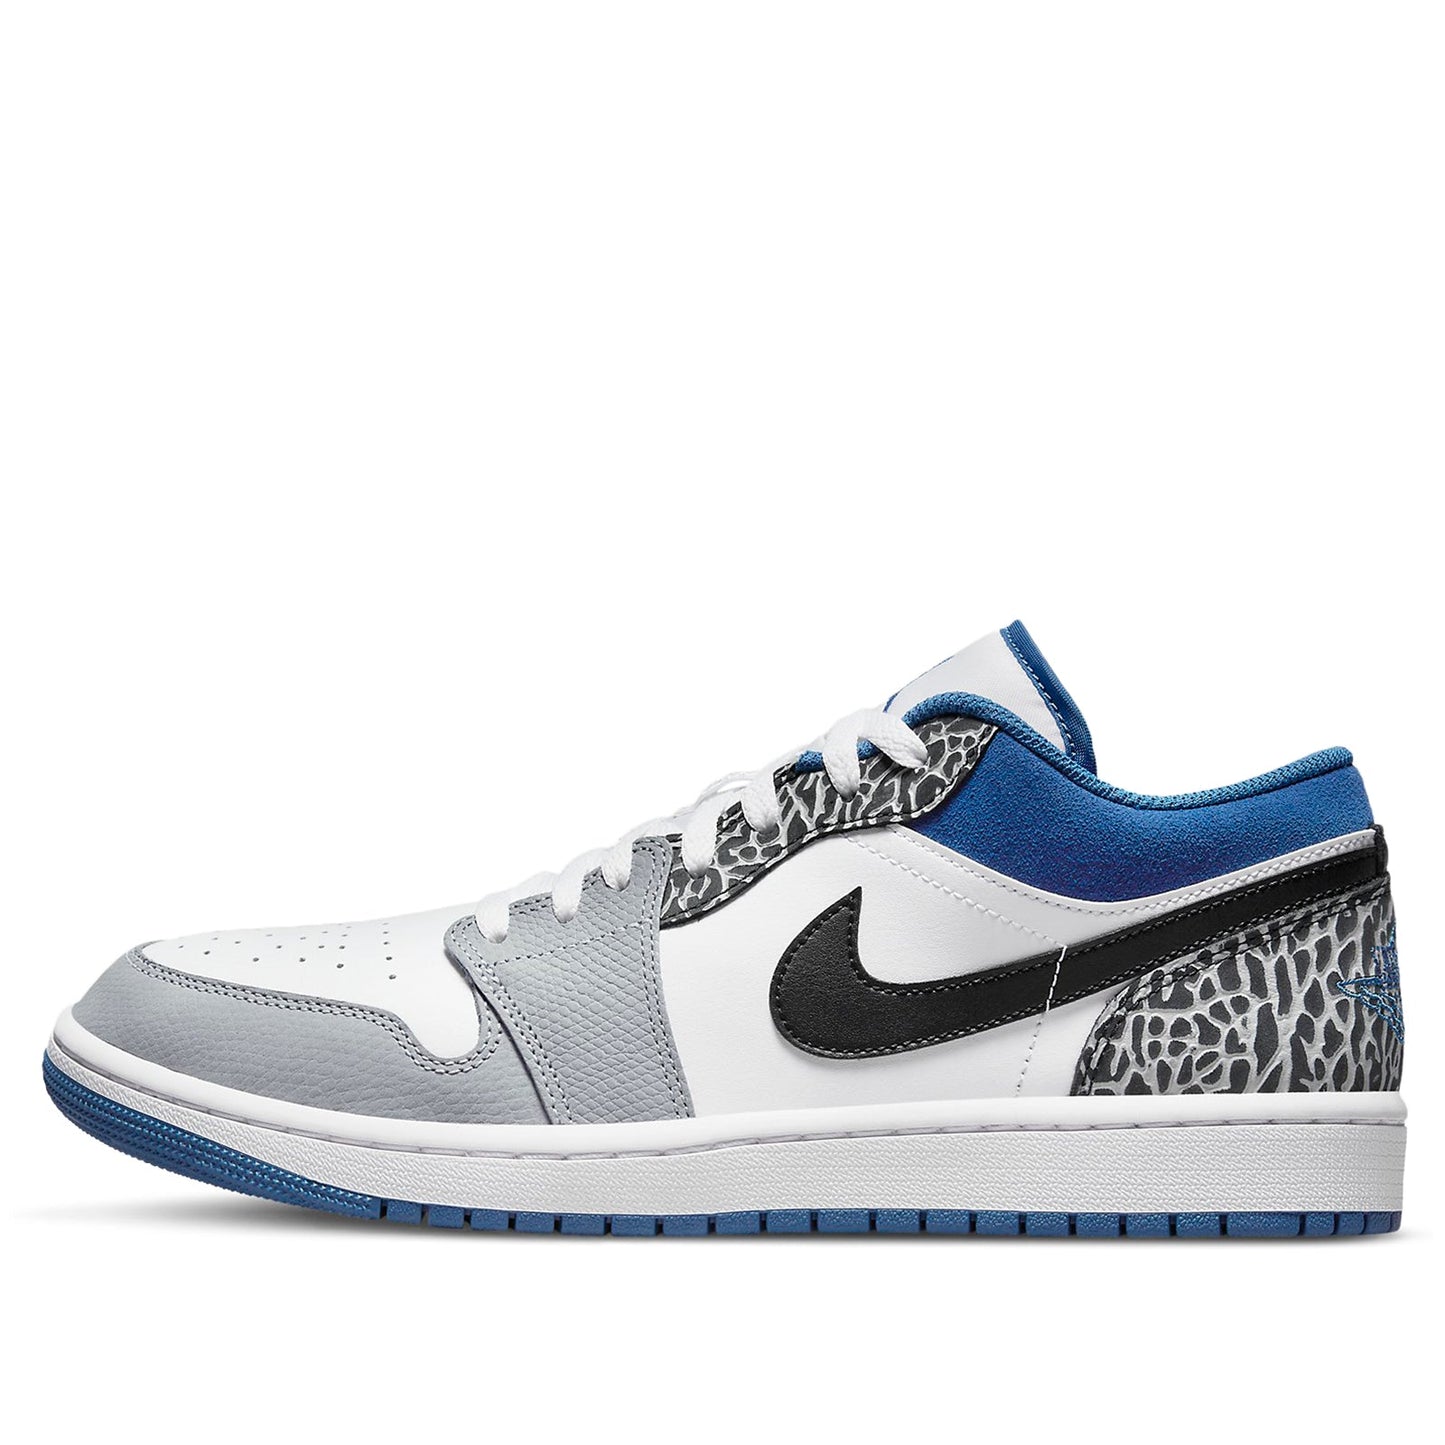 Air Jordan 1 Low SE 'True Blue' Shoes